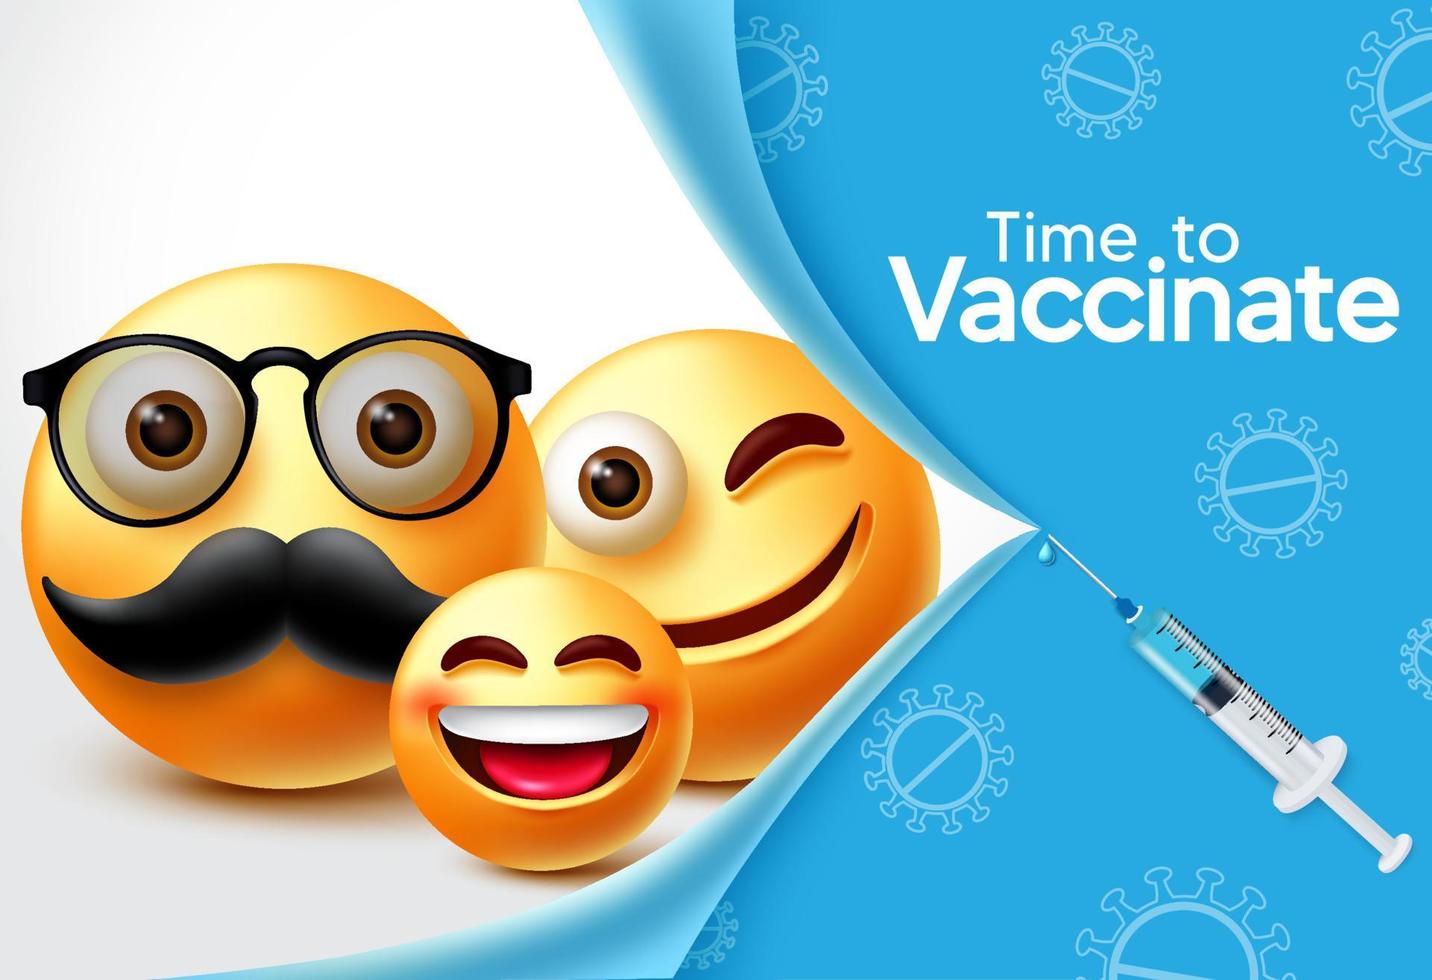 emoji caratteri disegno vettoriale banner di vaccino. tempo per vaccinare il testo con il carattere emoji 3d della famiglia e l'elemento siringa per la vaccinazione covid-19 e il design di prevenzione. illustrazione vettoriale